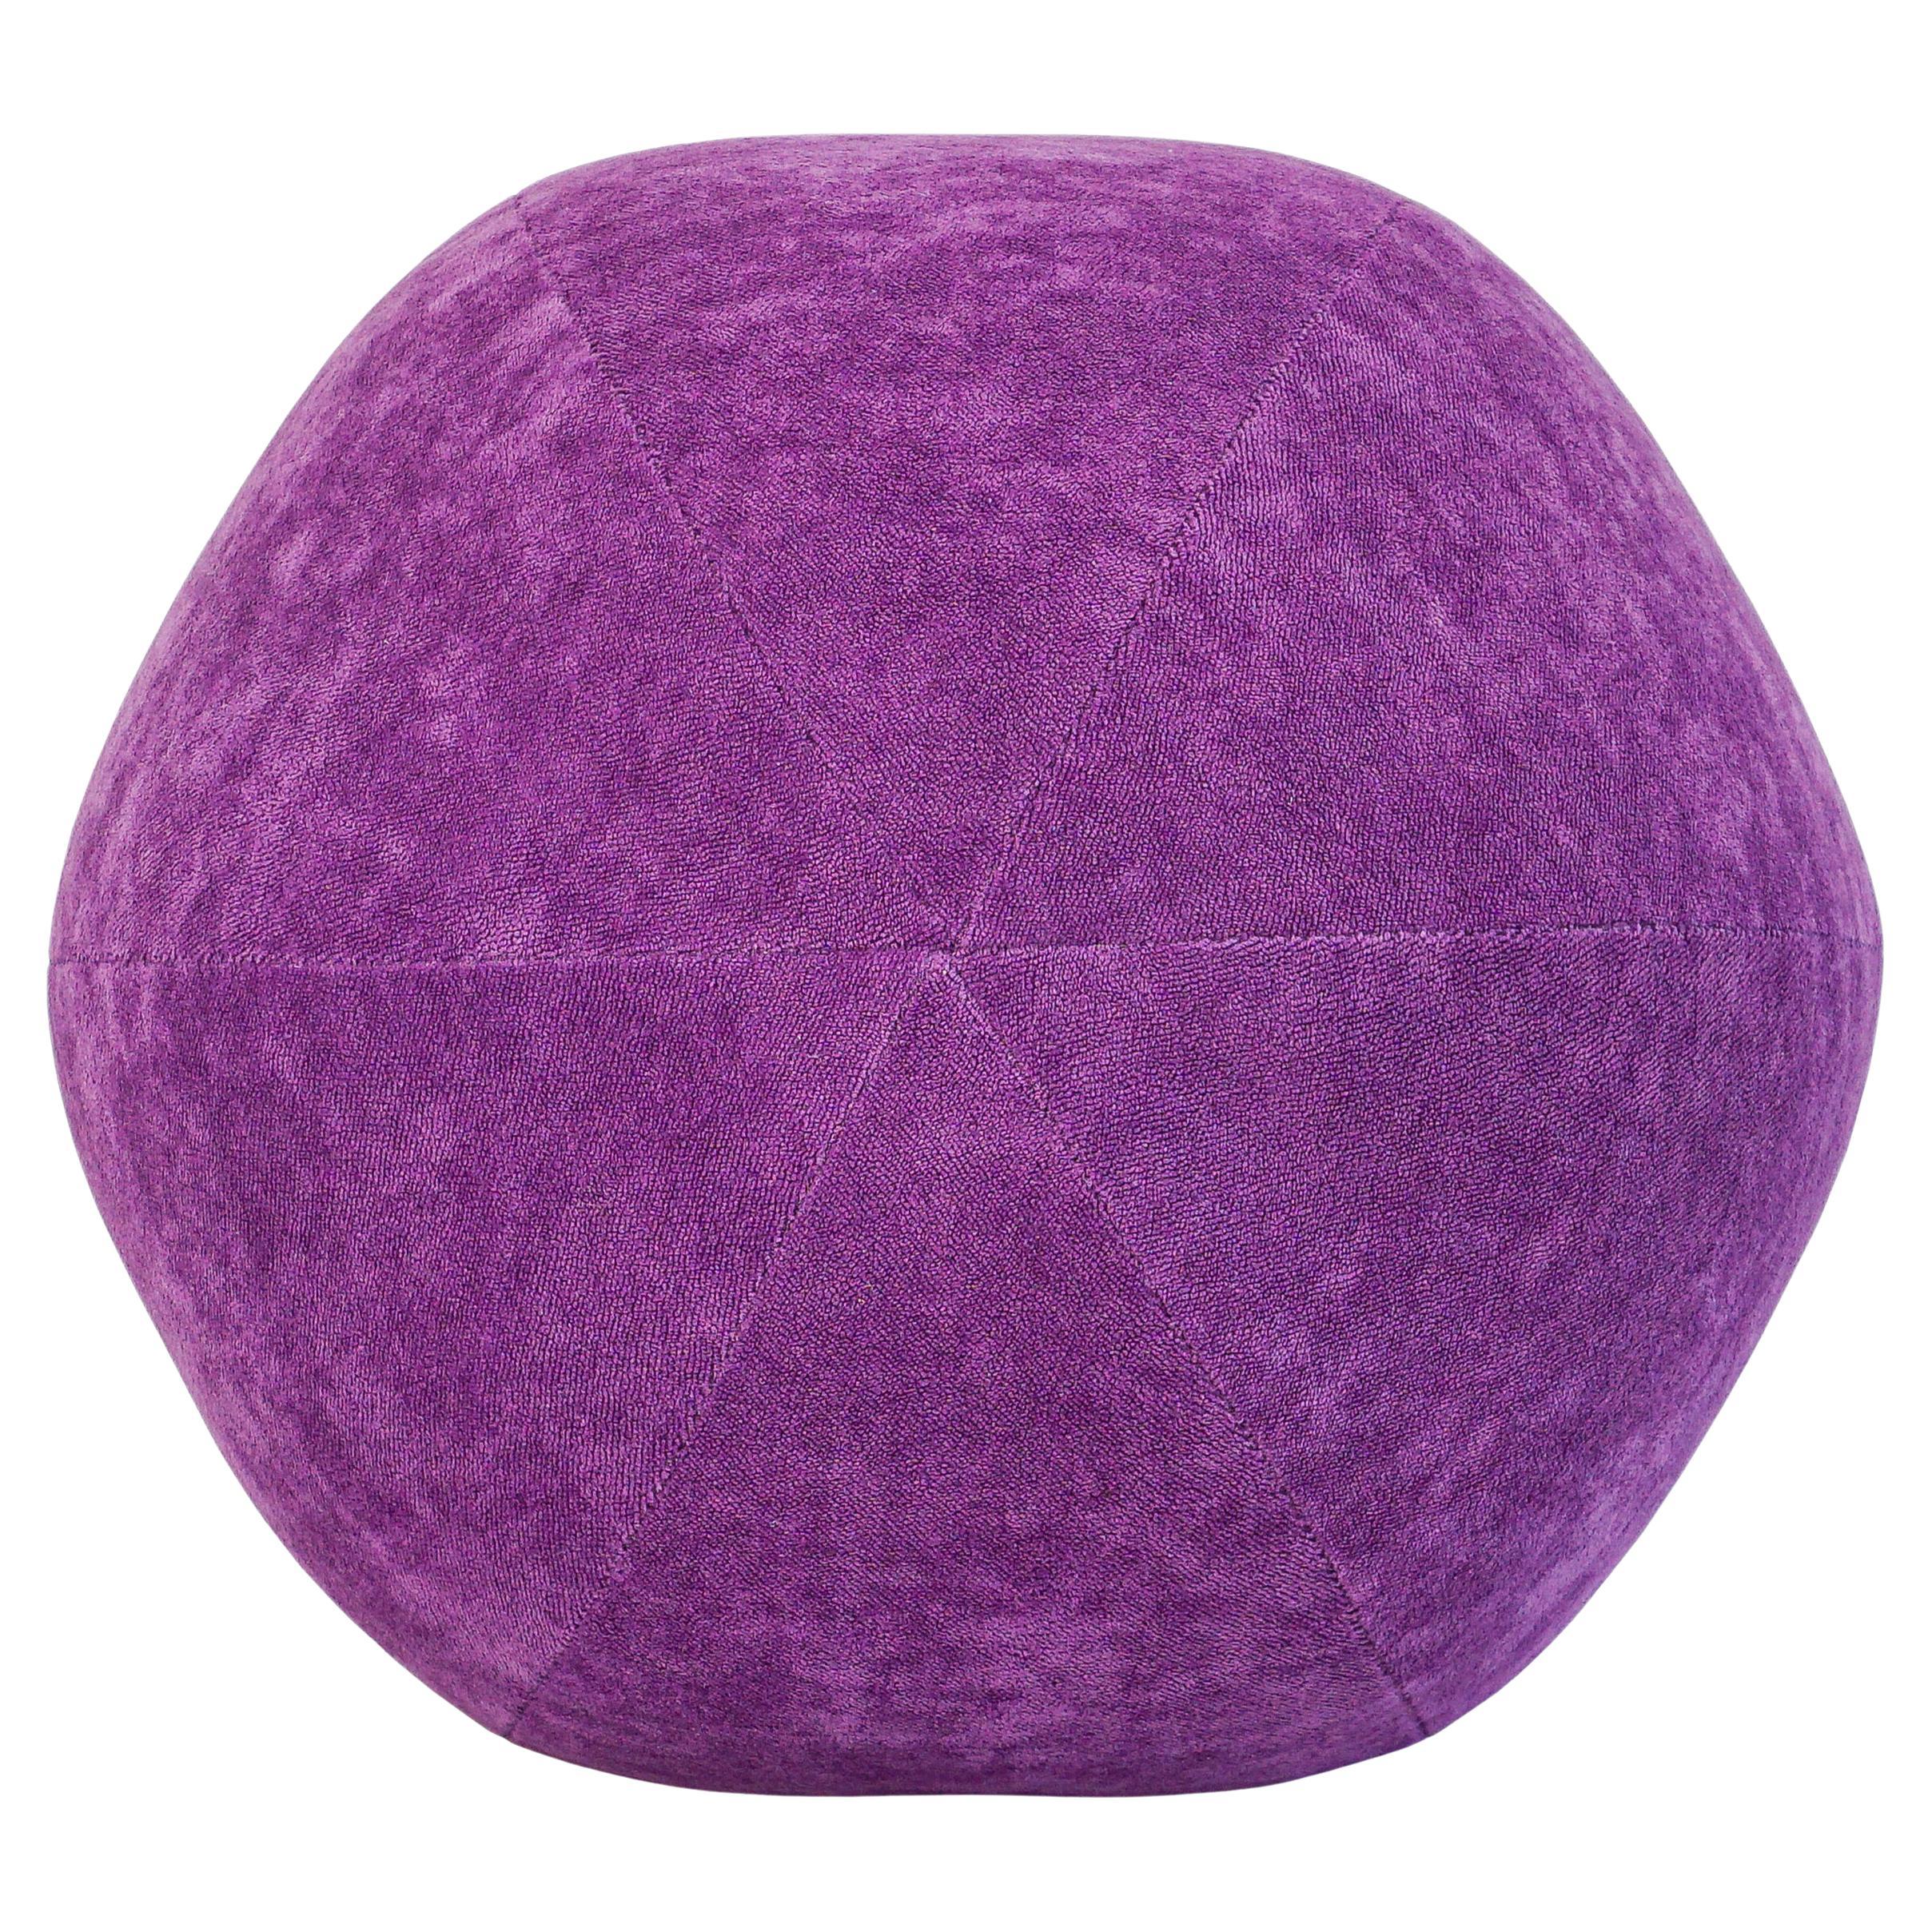 Purple Velvet Ball Pillow For Sale